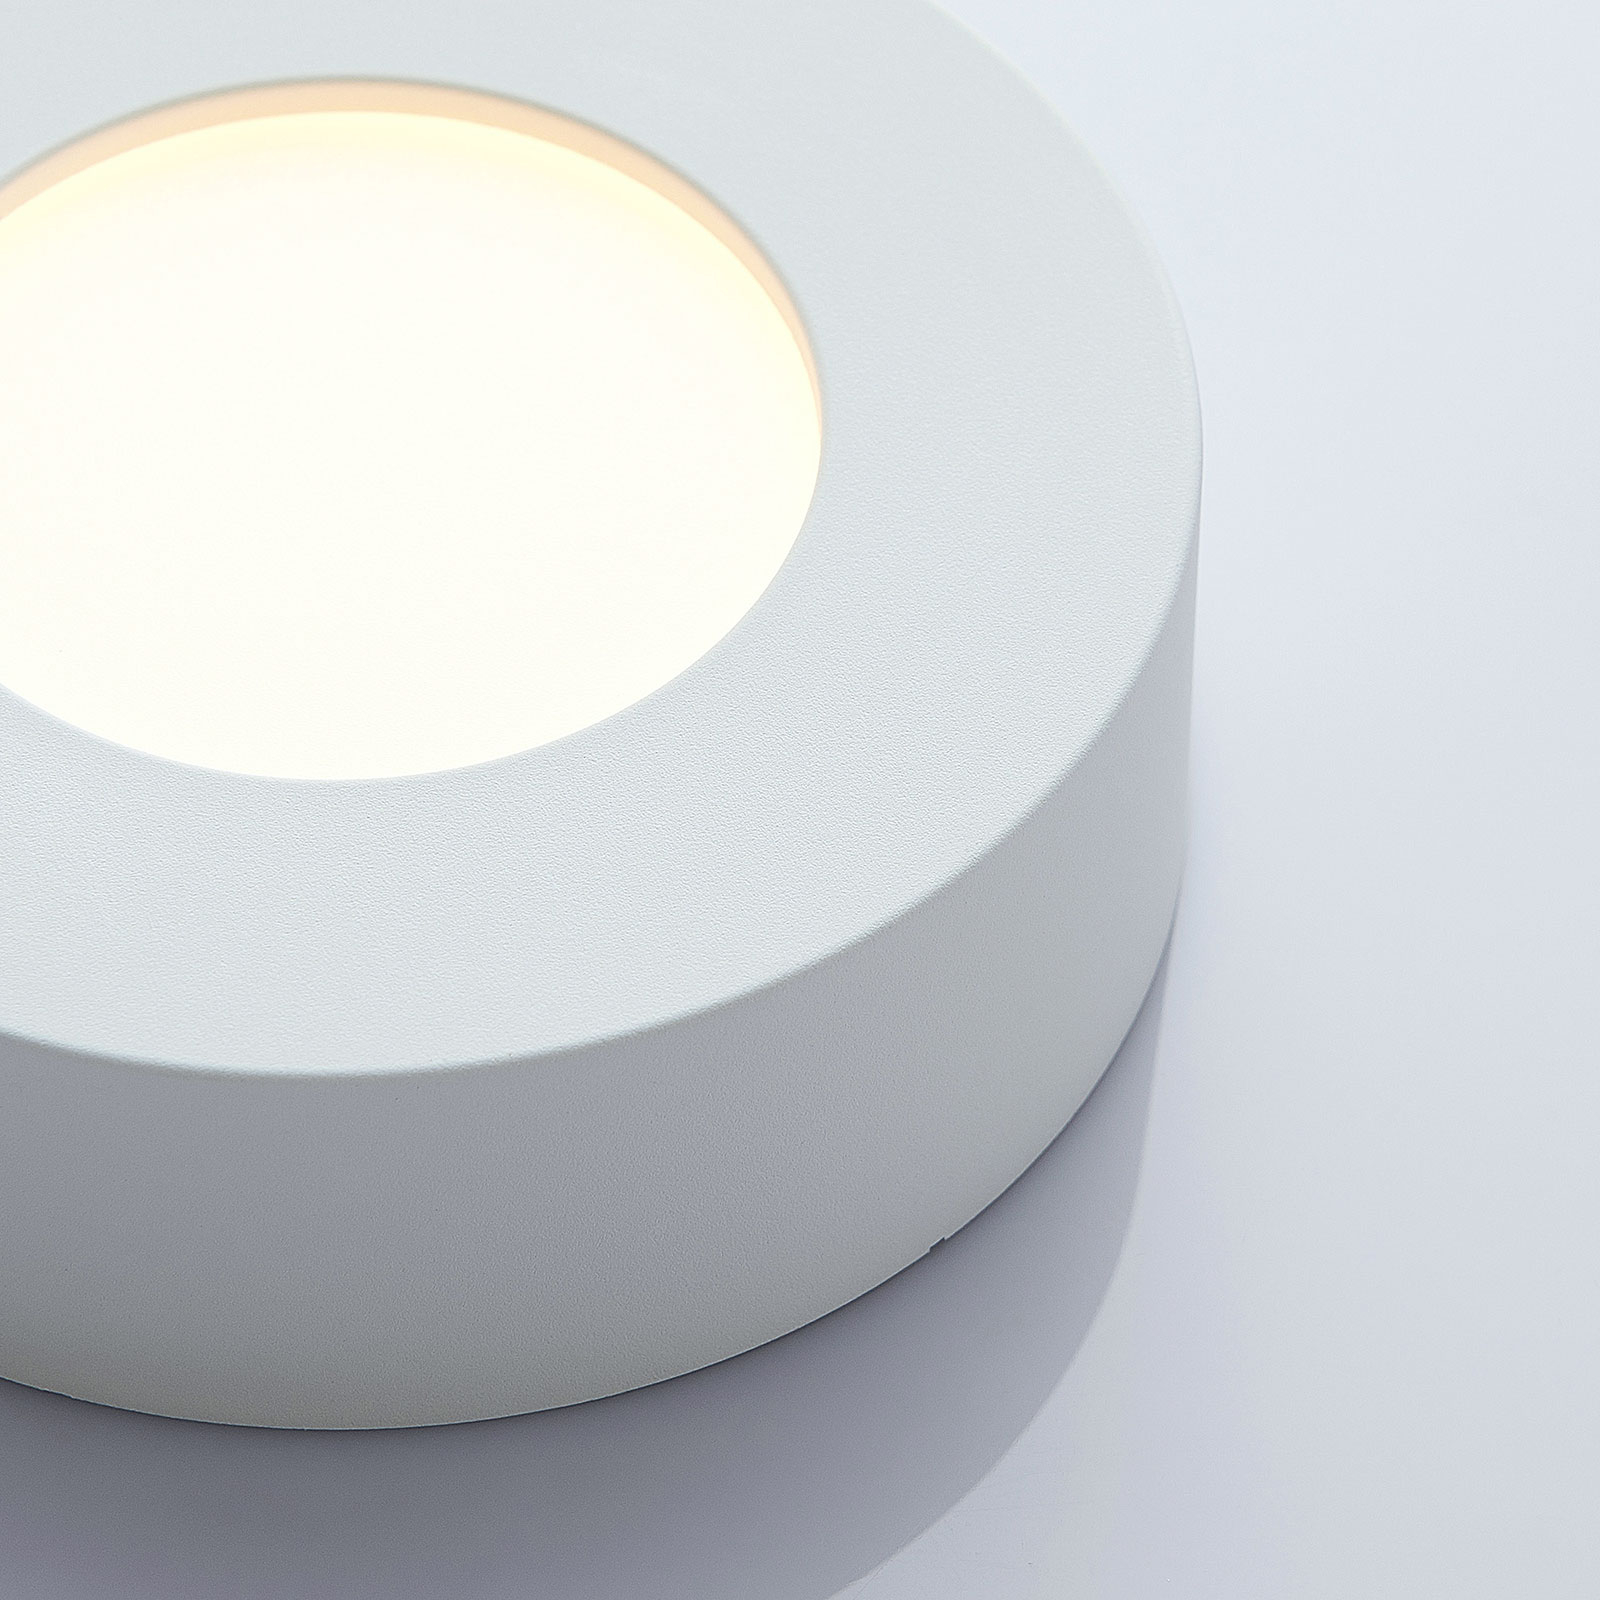 Marlo LED ceiling lamp white 3000 K round 12.8 cm